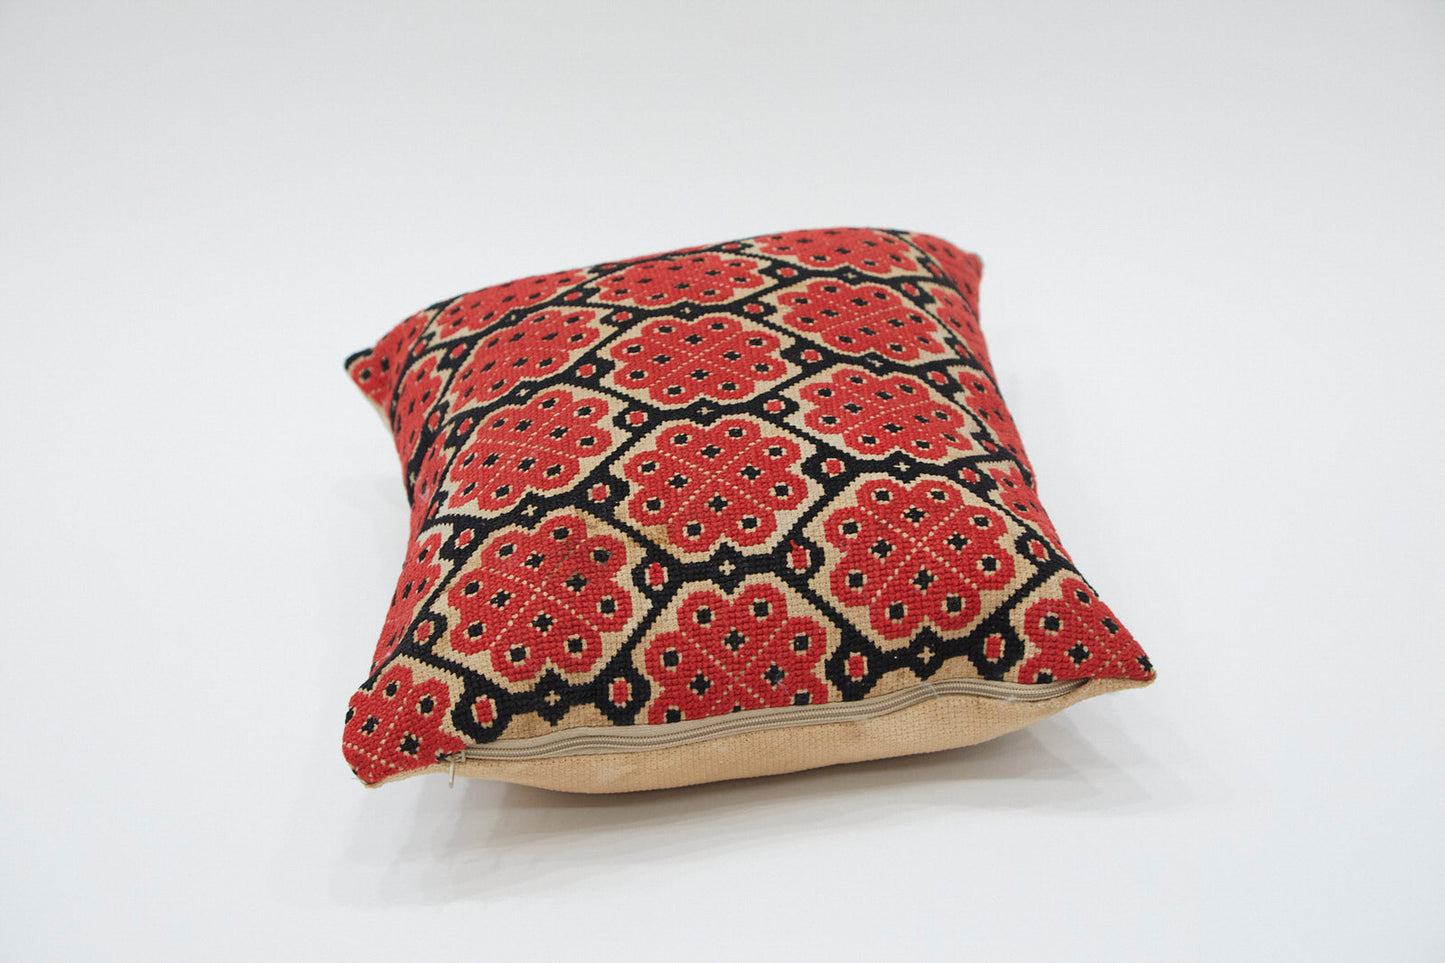 Antique Textile Pillow